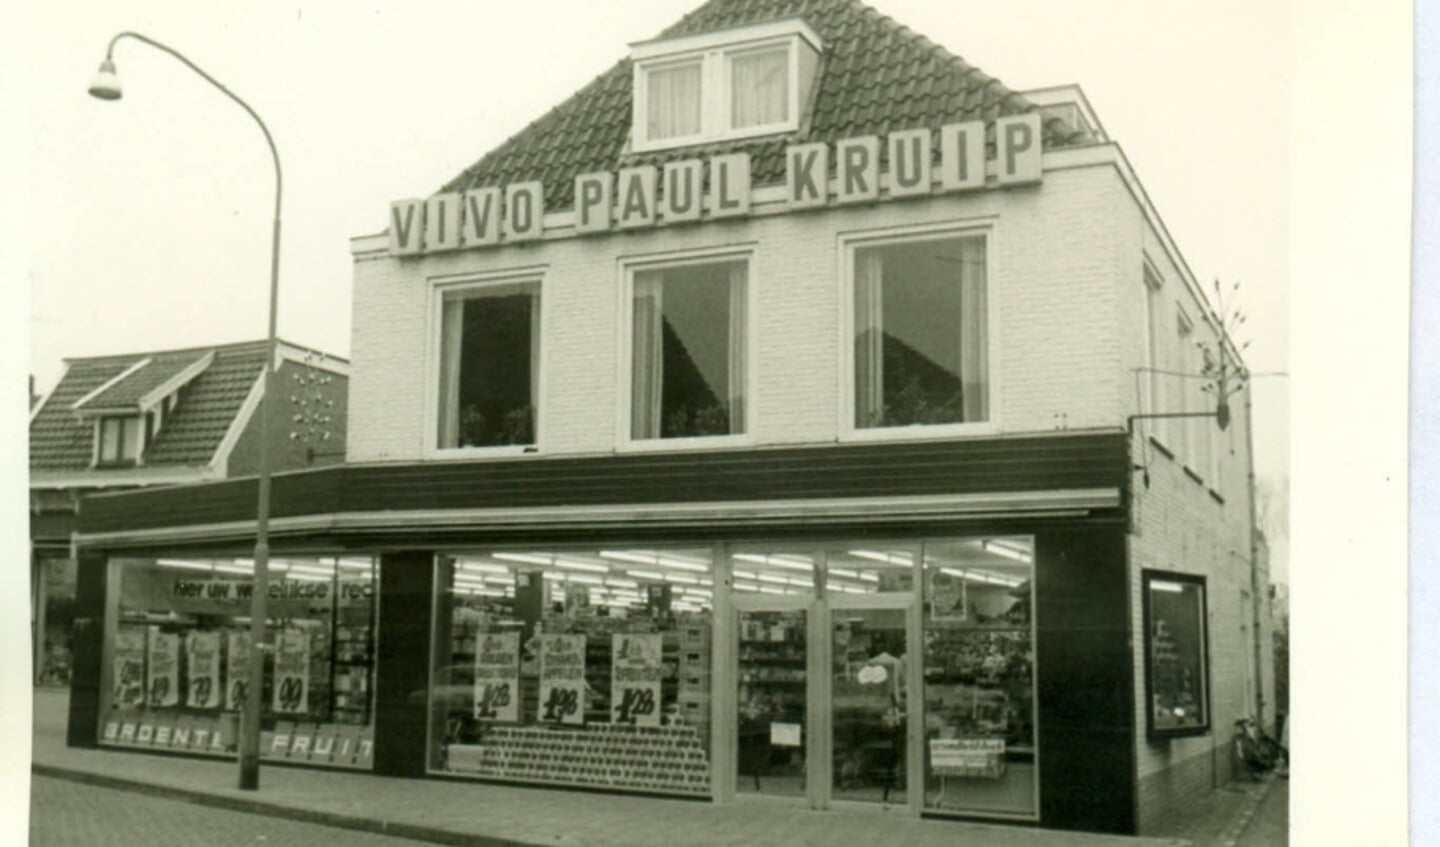 De Vivo van Paul Kruip in 1971.